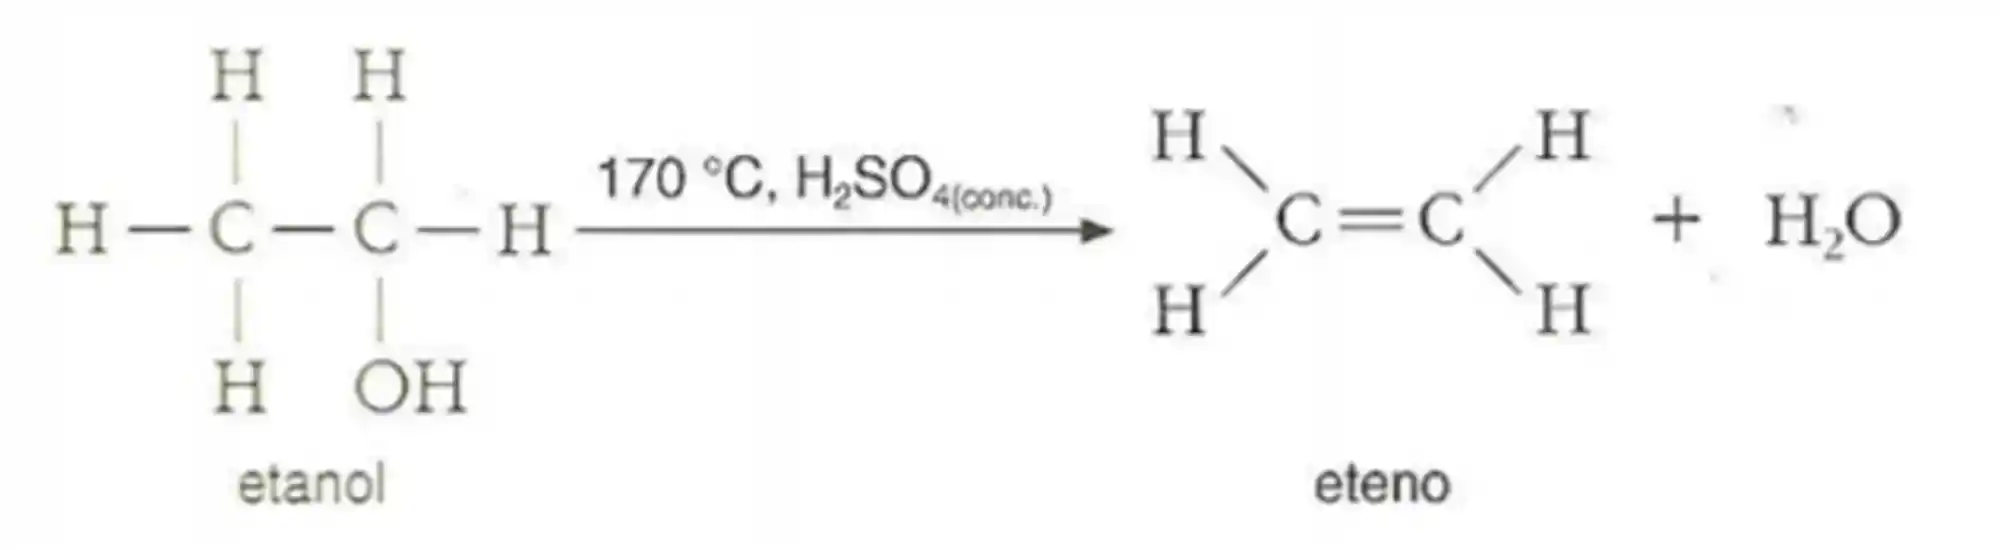 Reação de Desidratação Intermolecular: Exemplo